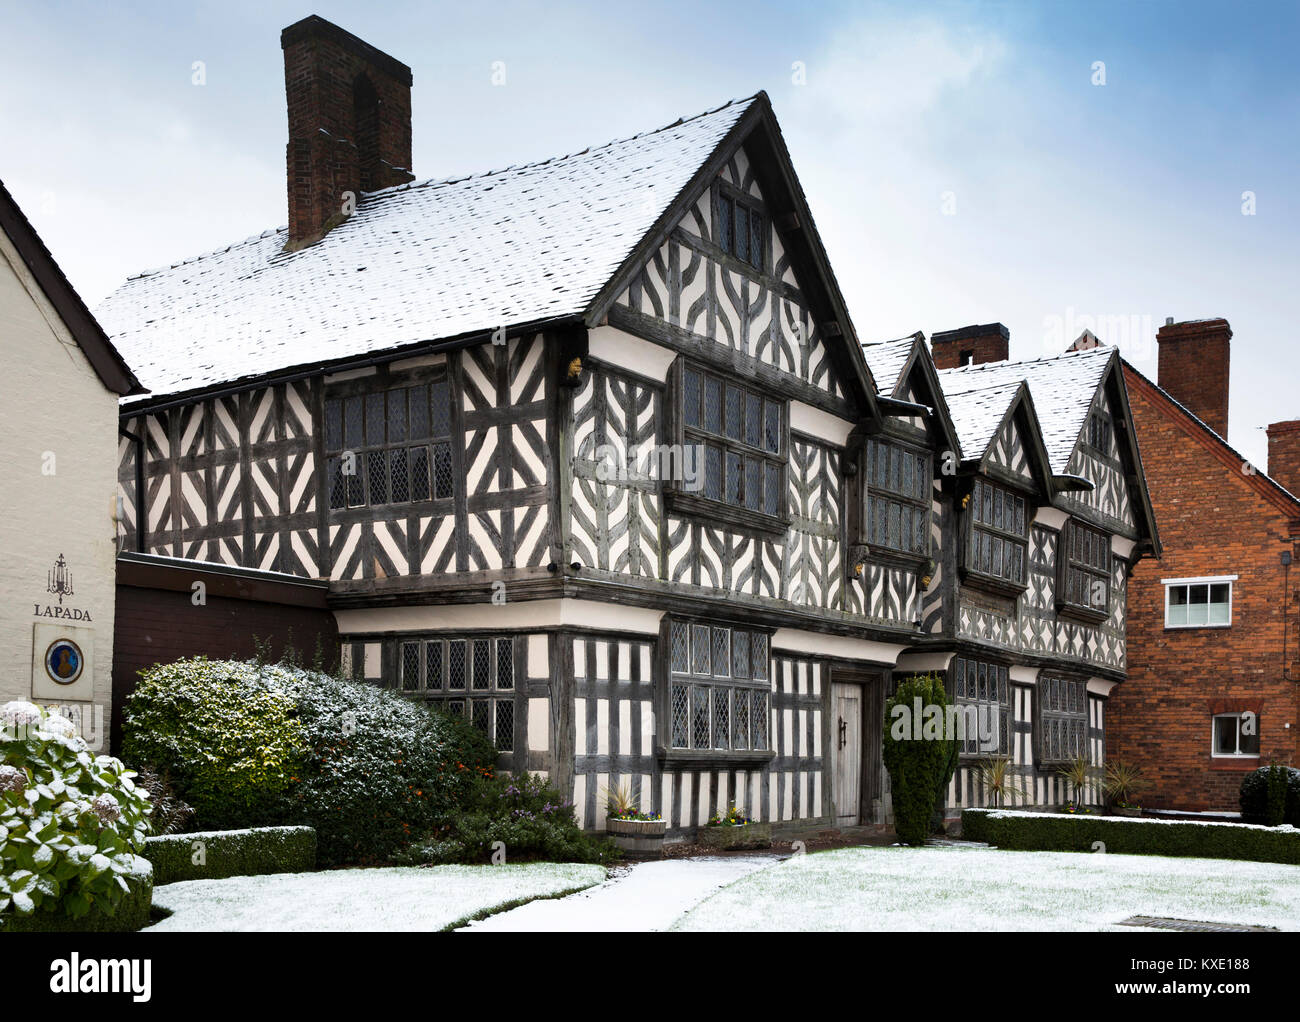 Regno Unito, Inghilterra, Cheshire, Nantwich, London Road, 1577 chiese Mansion, uno degli edifici più antichi del centro lagunare Foto Stock